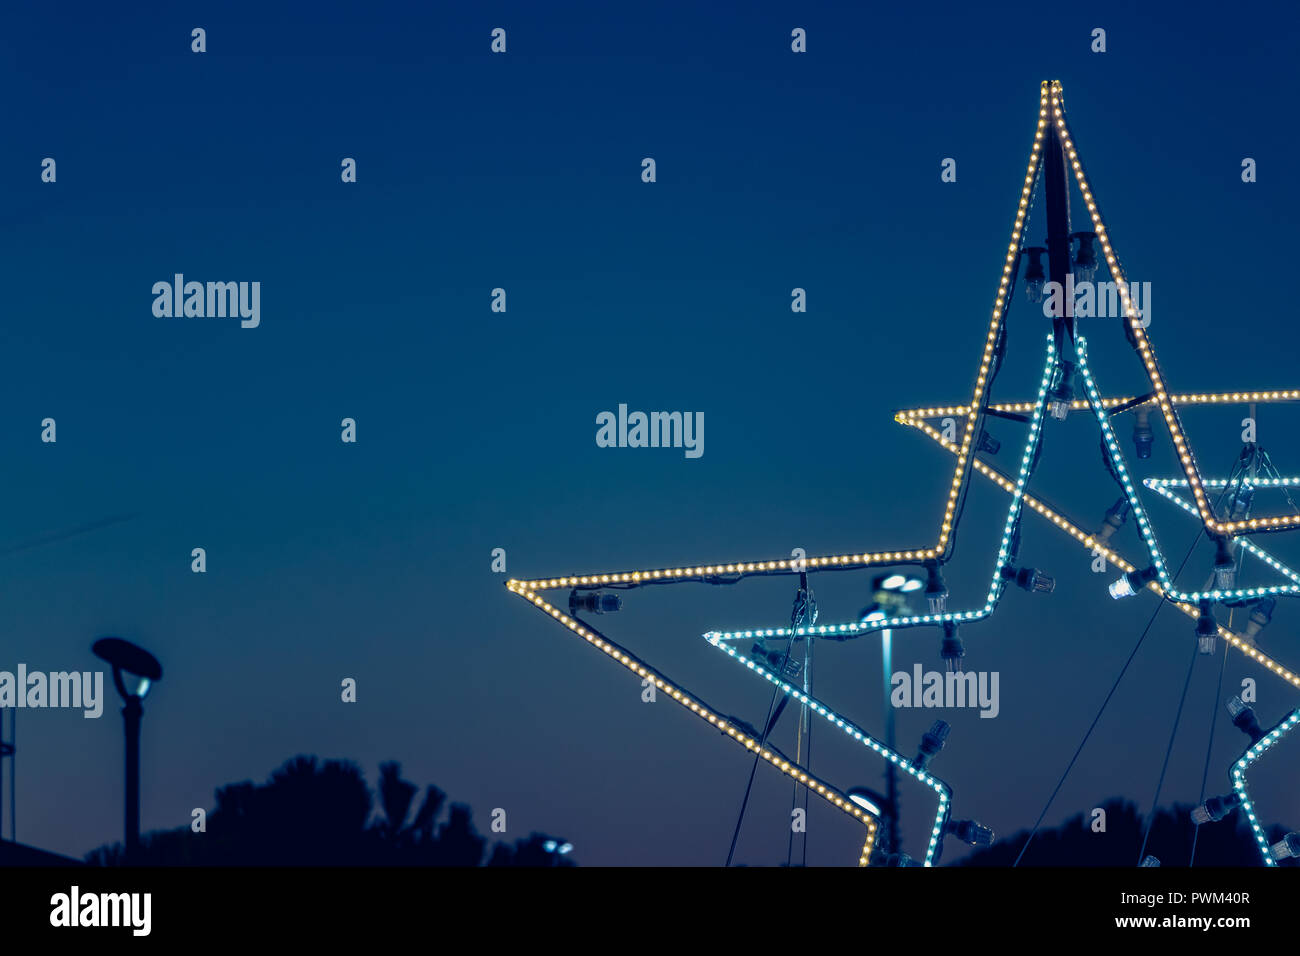 Stella Di Natale Led.Stella Di Natale In Luce Led Su Sfondo Di Notte Foto Stock Alamy